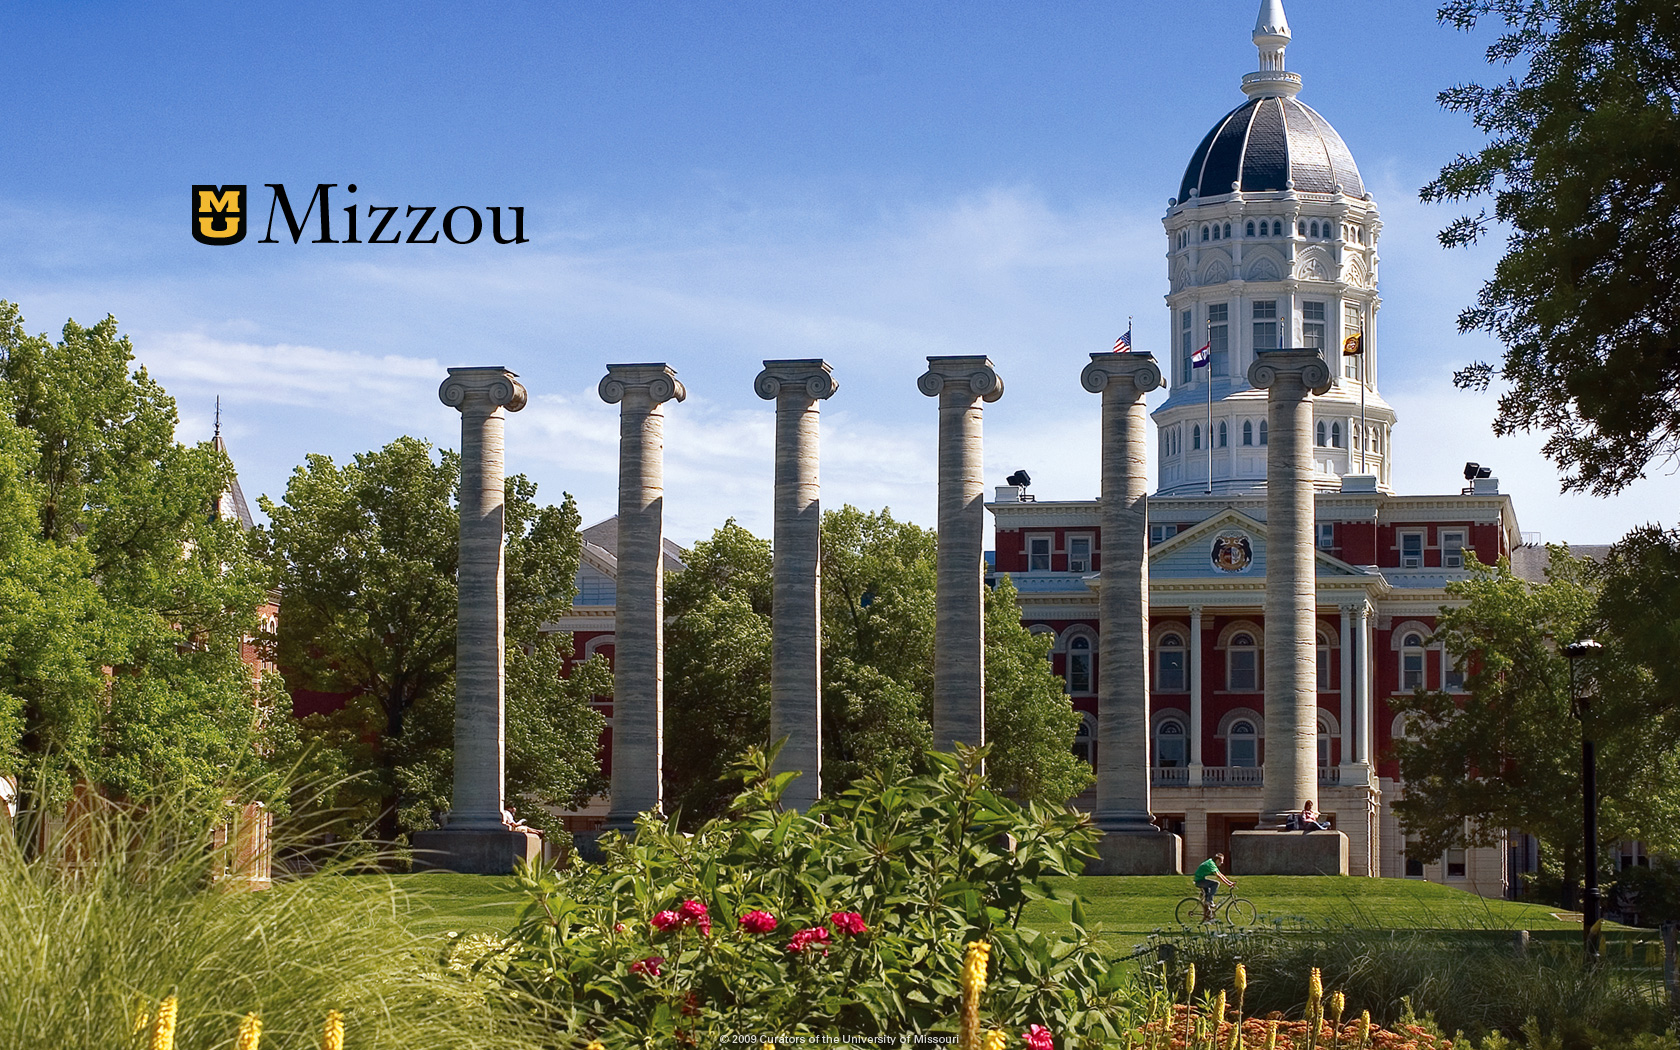 Mizzou Spirit Mizzou University of Missouri